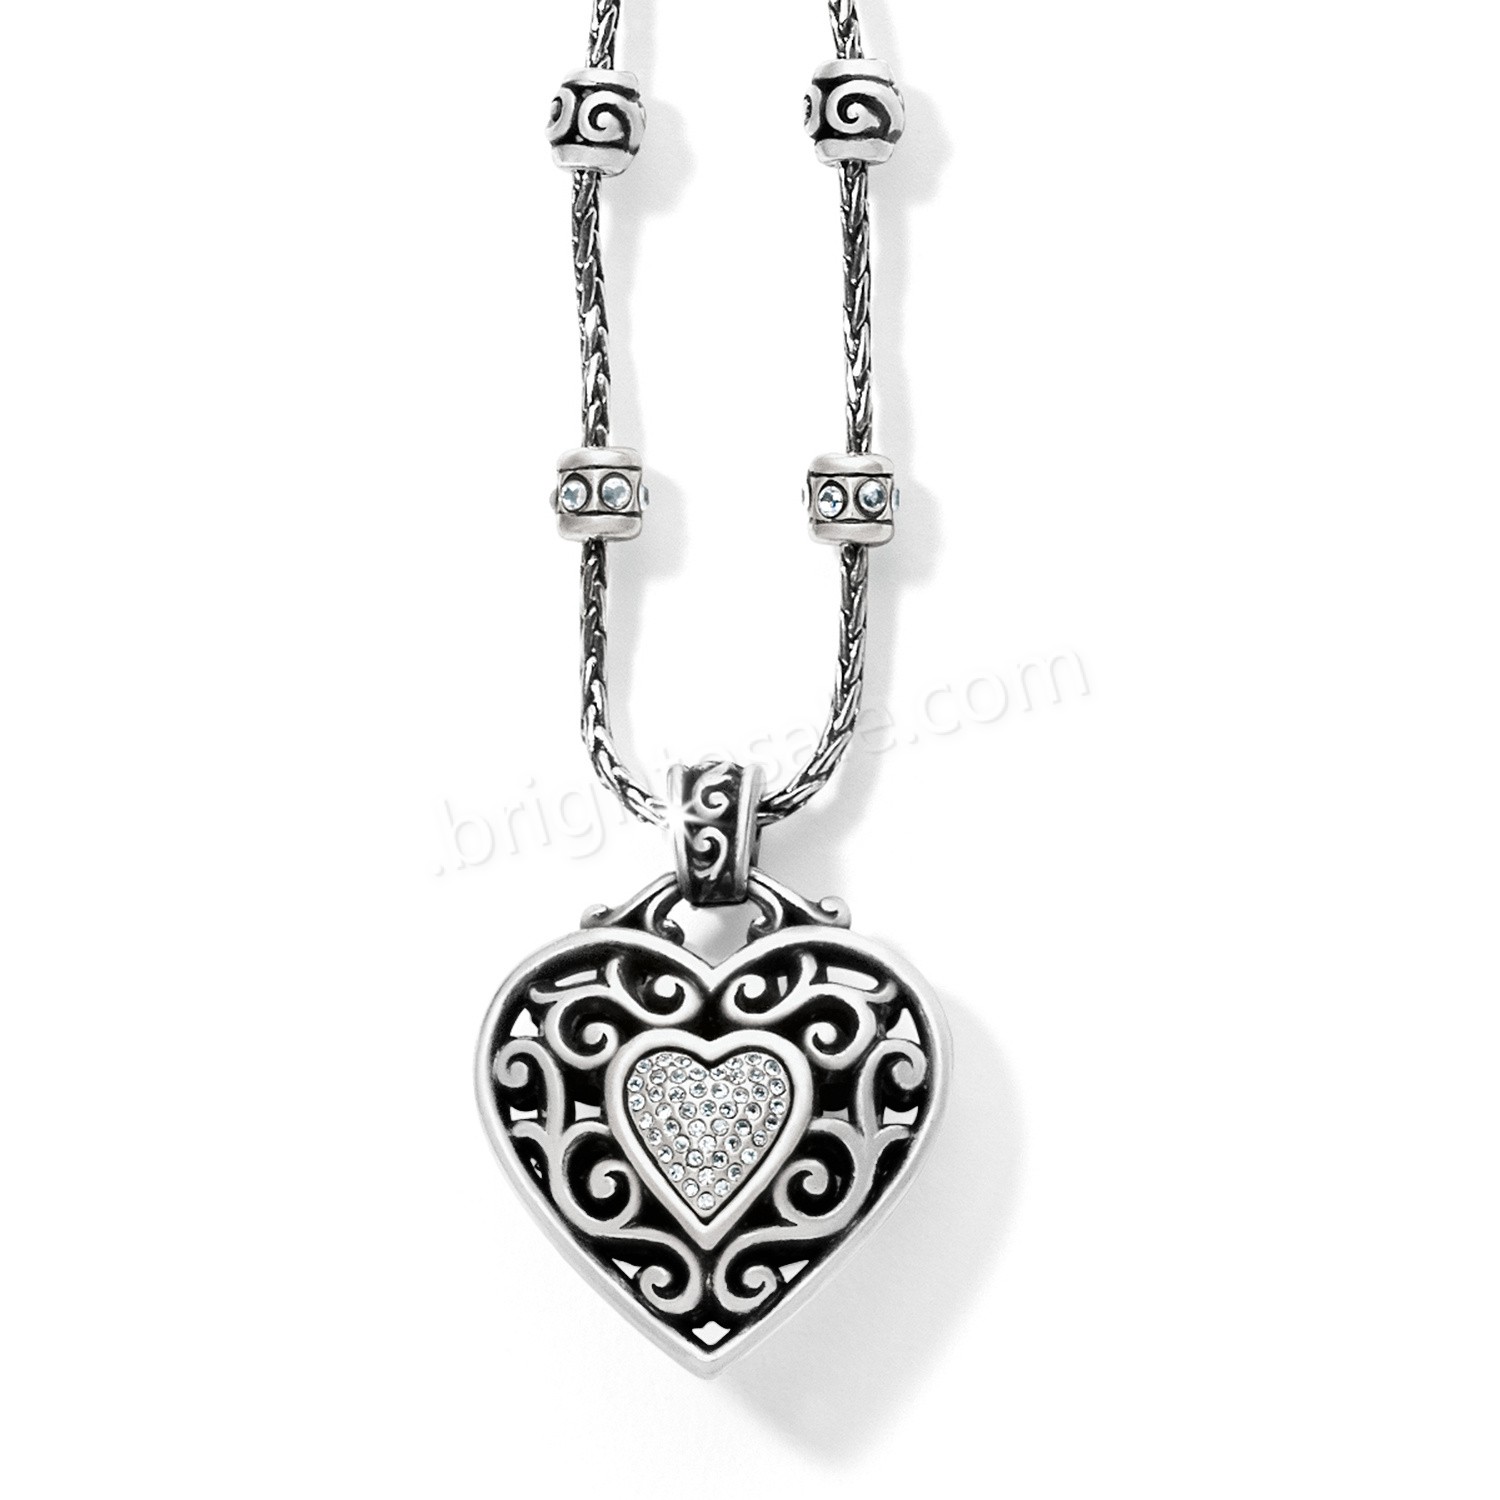 Brighton Collectibles & Online Discount Reno Heart Necklace - Brighton Collectibles & Online Discount Reno Heart Necklace